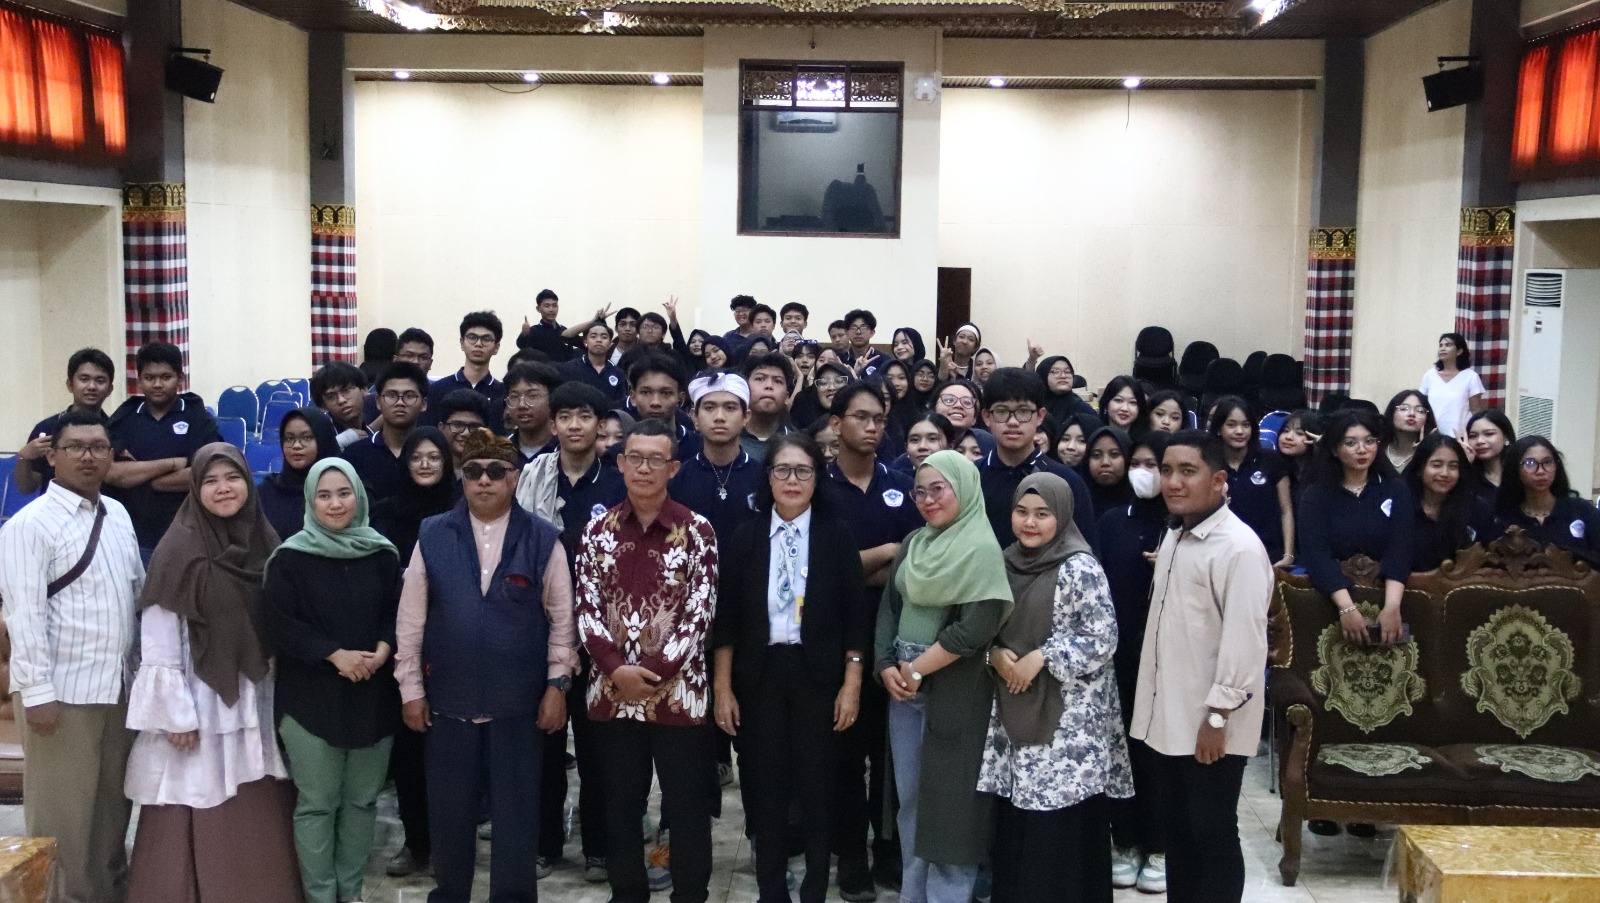 Persiapkan Diri Menempuh Pendidikan Tinggi, Siswa-Siswi SMA Perguruan Cikini Jakarta Kunjungi FIB Unud